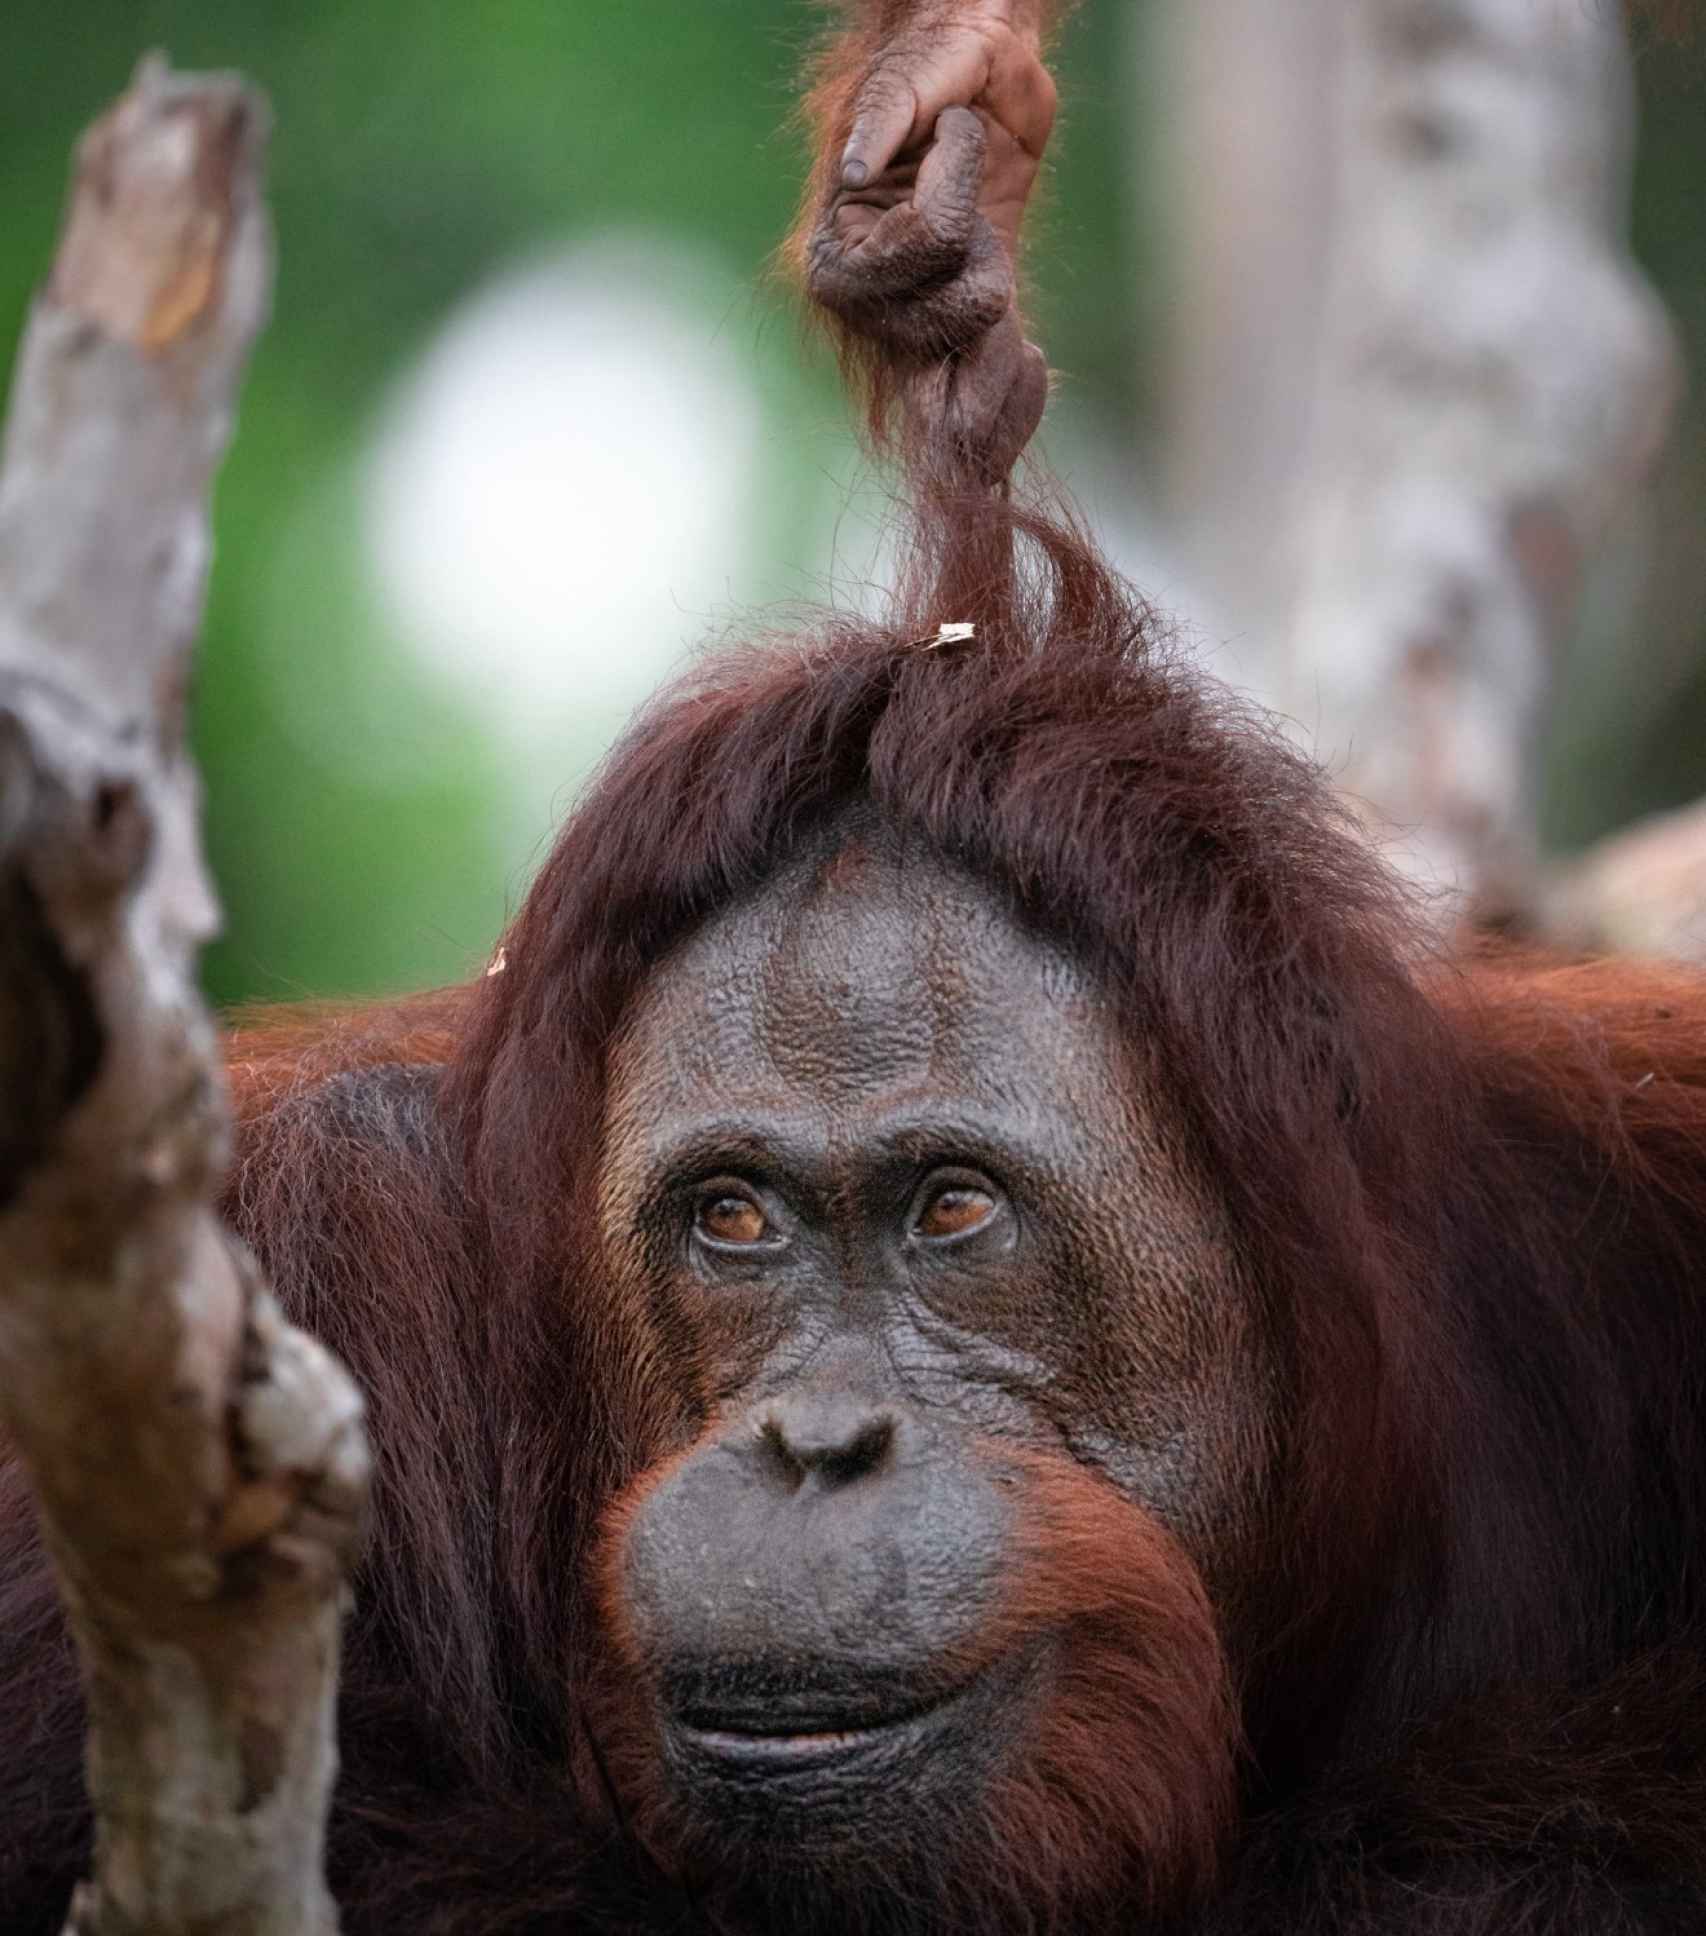 La expresión universal en el rostro de una madre orangután cuya cría ha descubierto la diversión de tirarle del pelo.